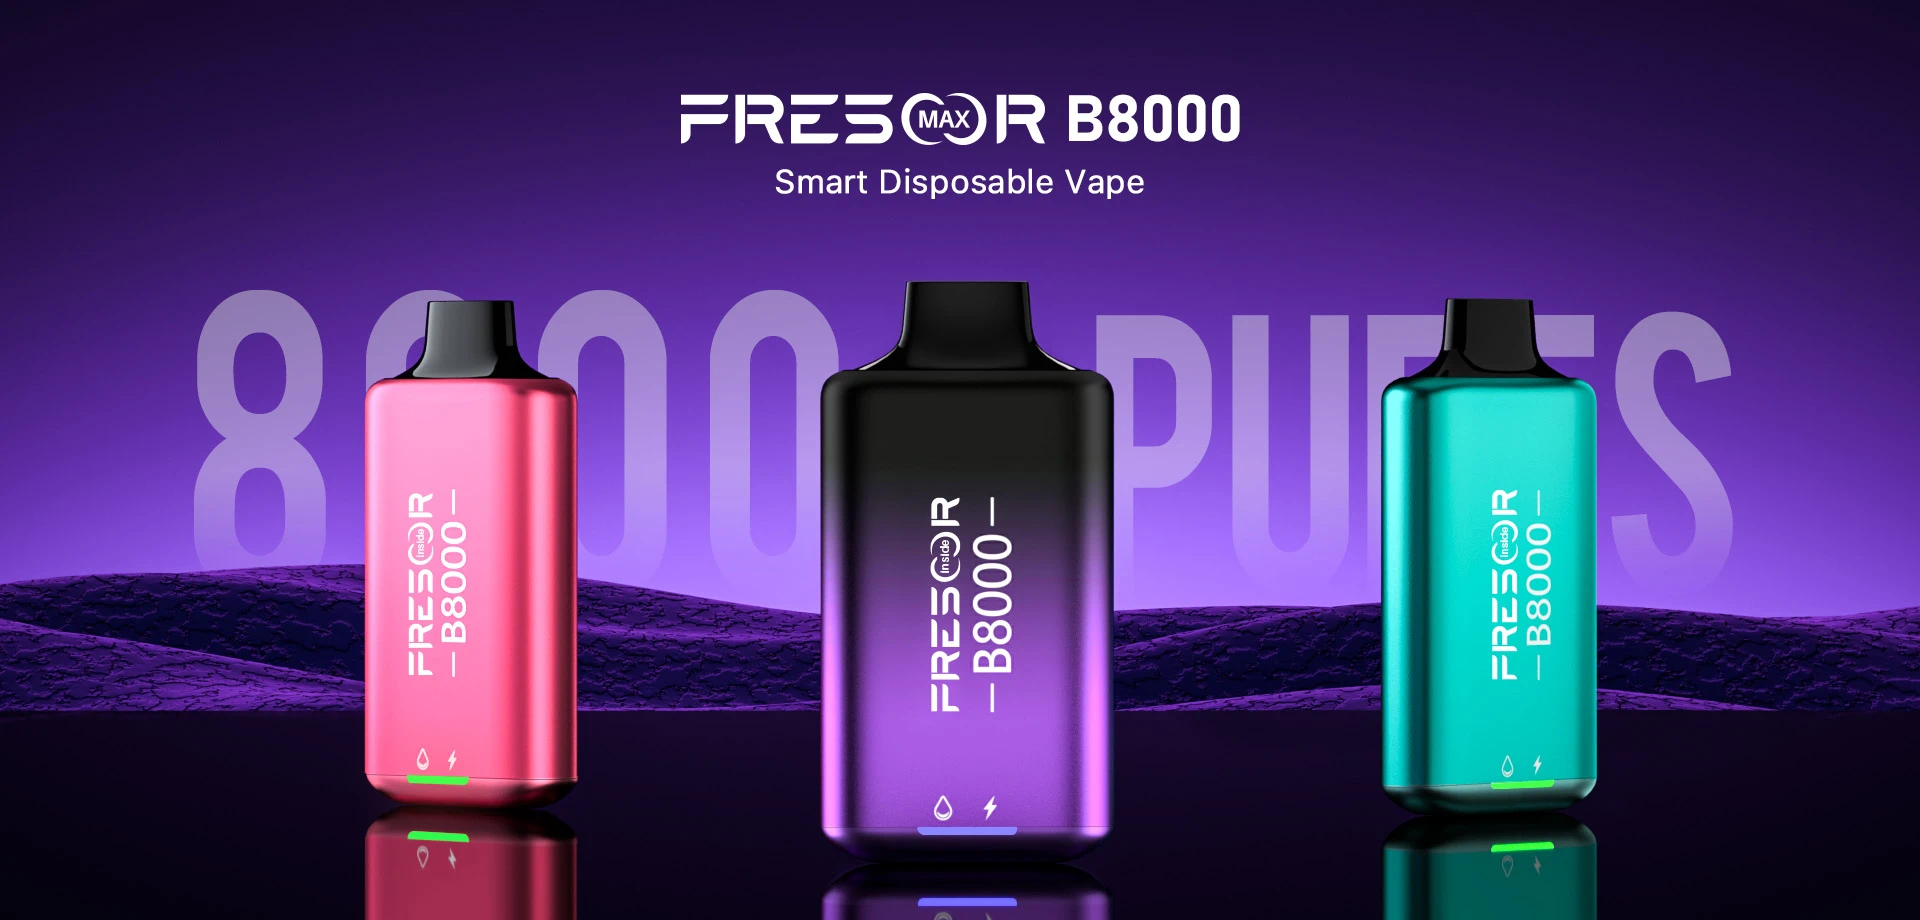 FRESOR B8000: Smart Disposable Vape